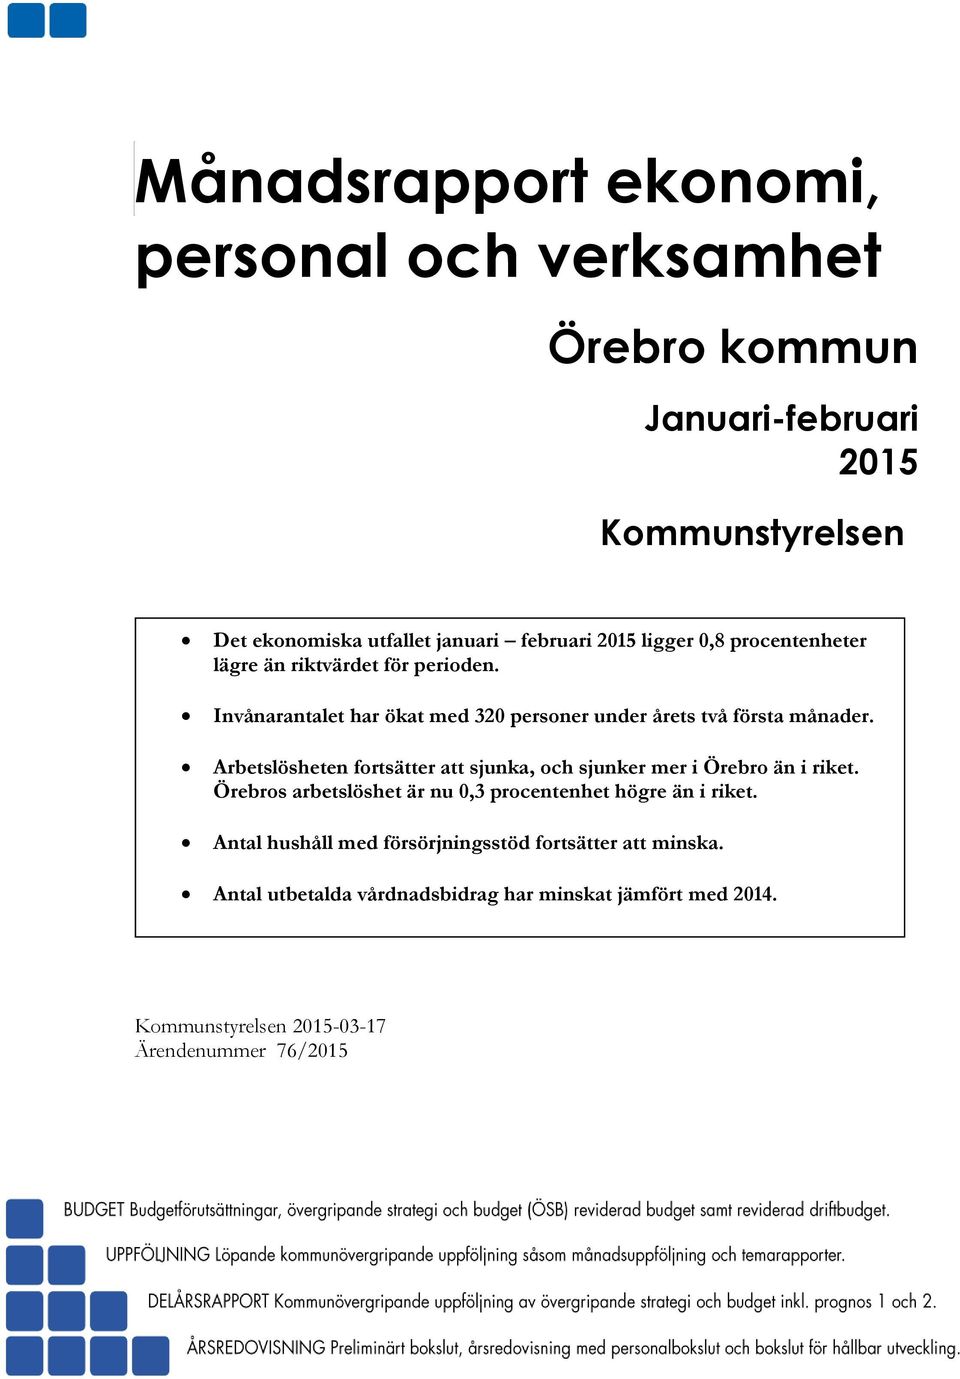 Arbetslösheten fortsätter att ska, och sker mer i Örebro än i riket. Örebros arbetslöshet är nu 0,3 procentenhet högre än i riket.